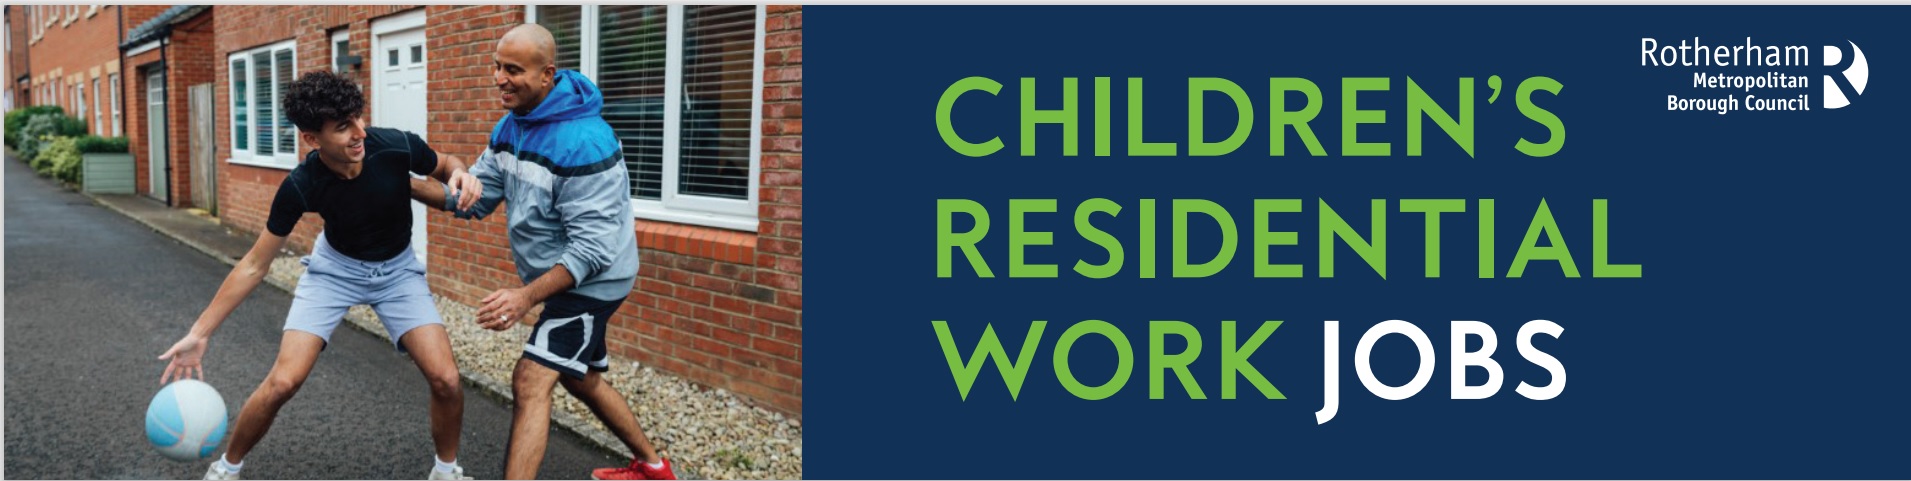 Childrens residential work jobs banner